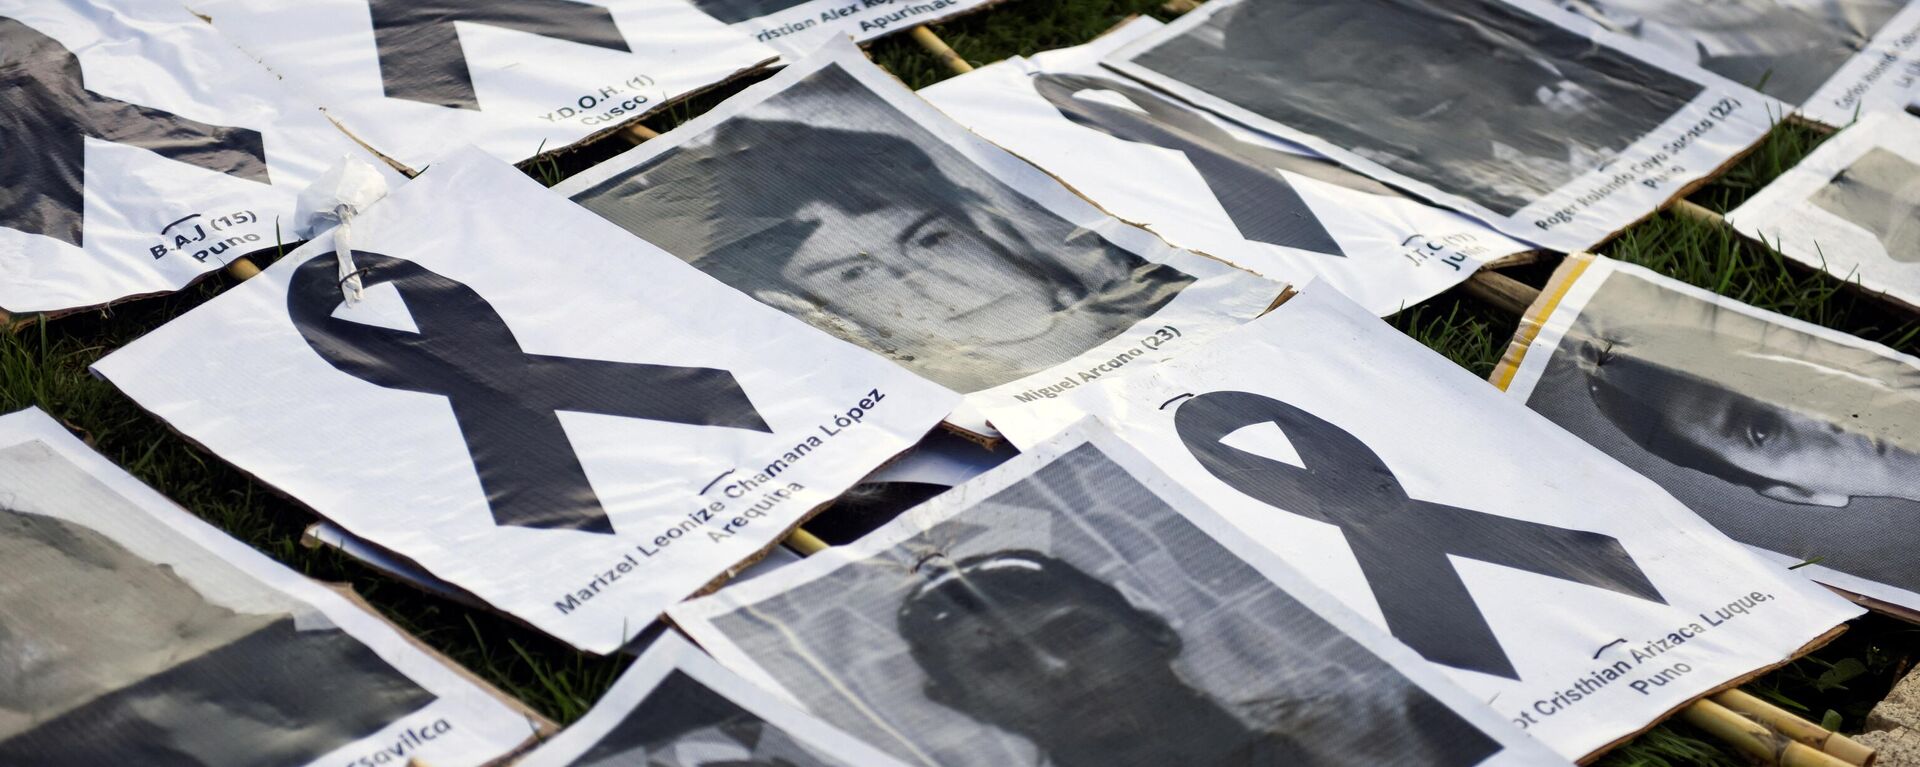 Fotos de civiles asesinados durante las protestas en Perú  - Sputnik Mundo, 1920, 16.02.2023